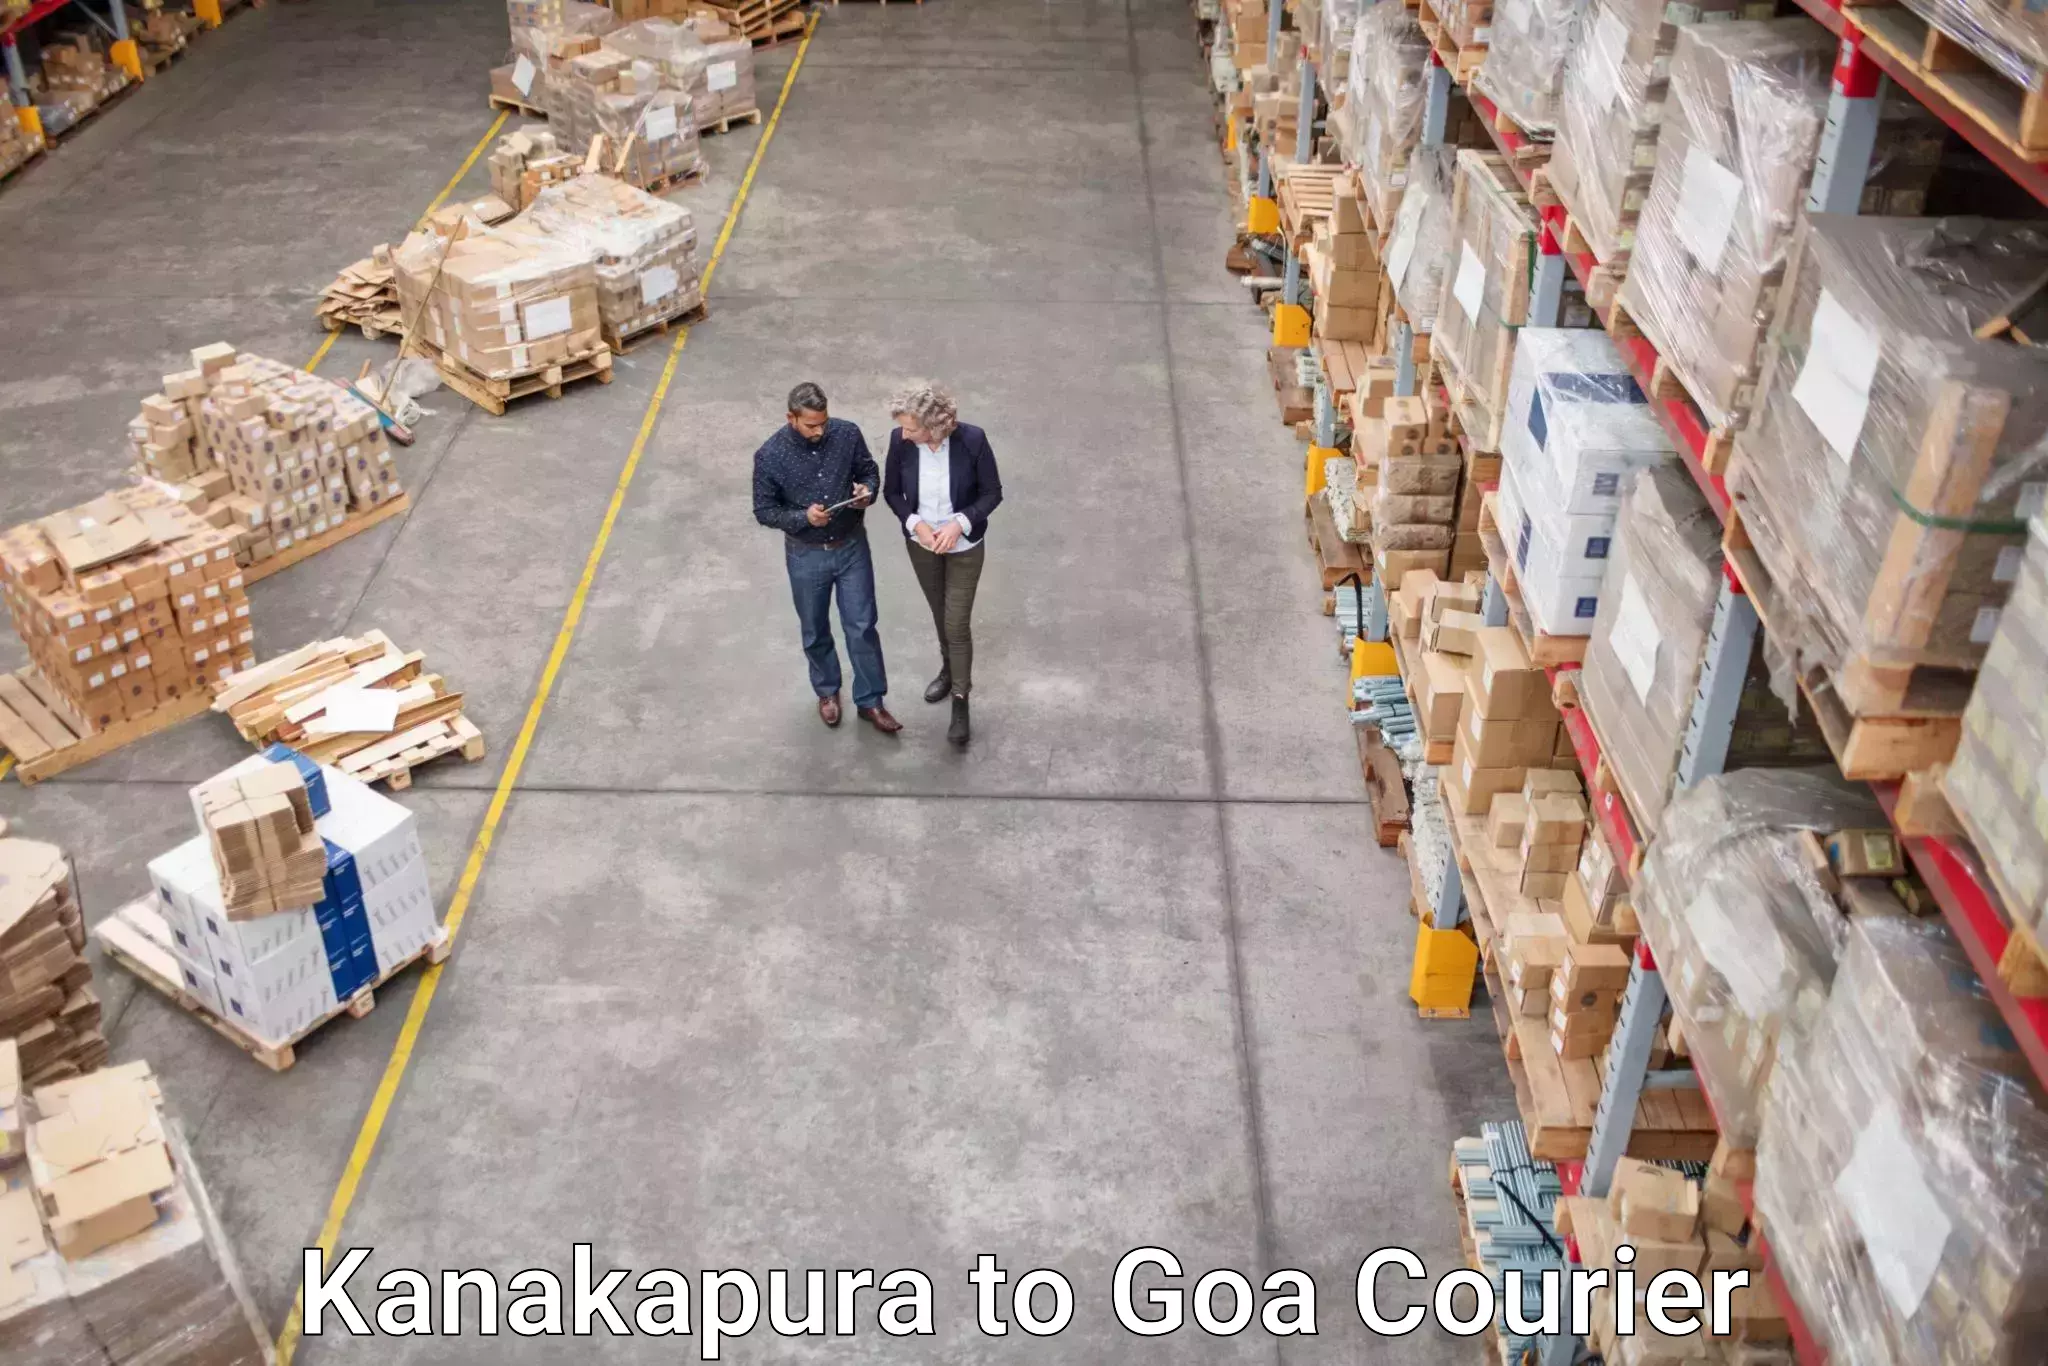 Cash on delivery service Kanakapura to Goa